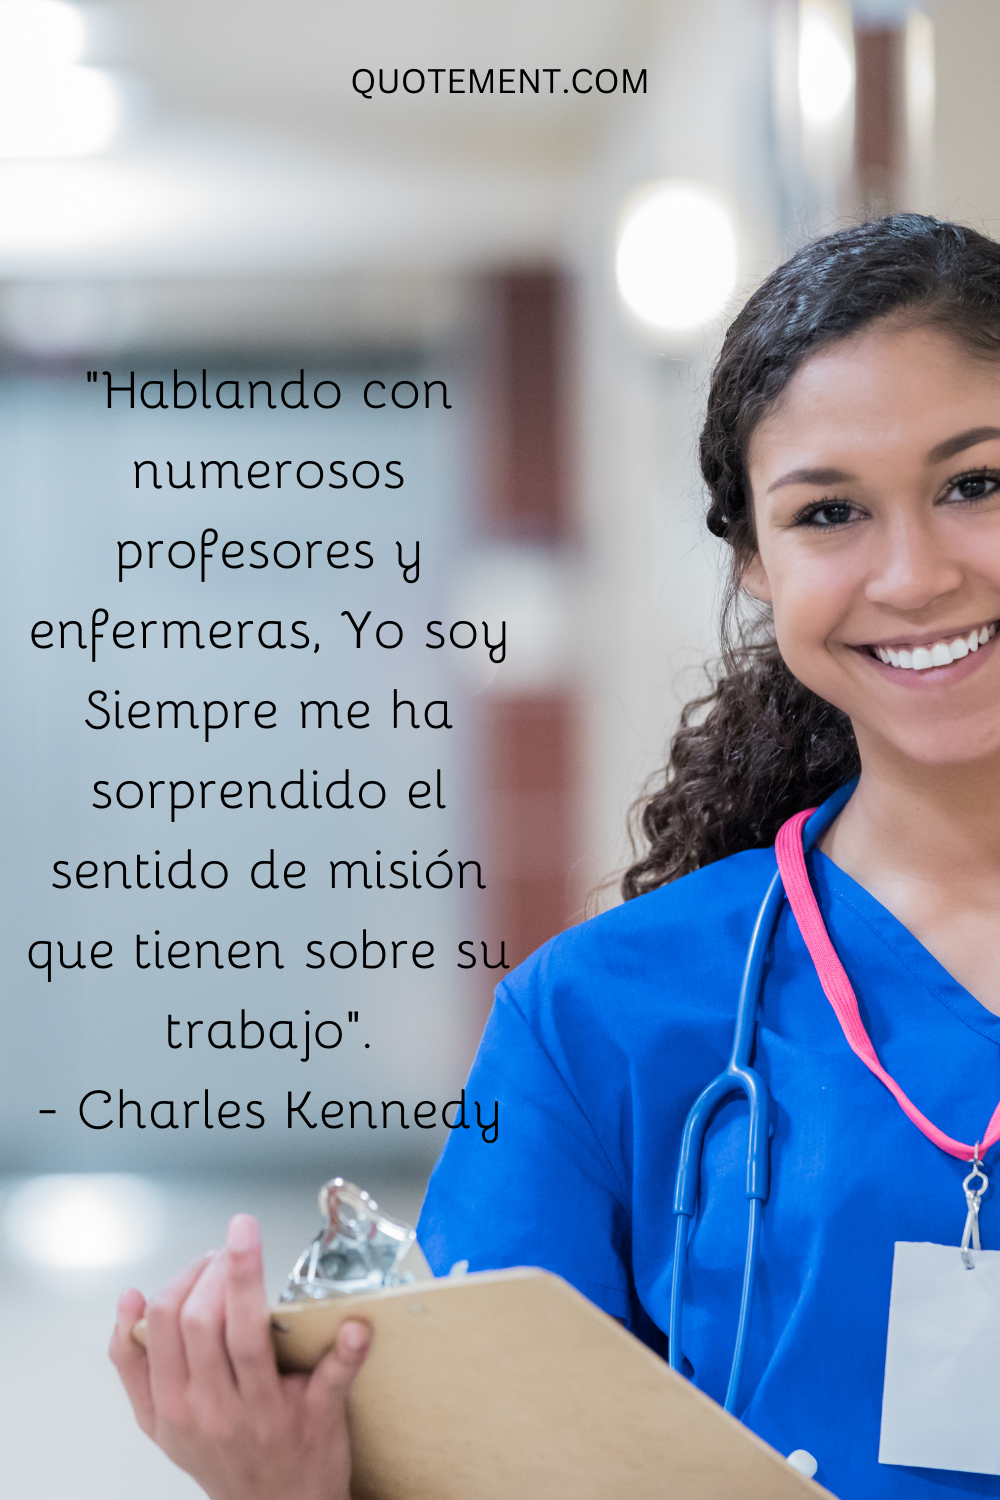 "Hablando con numerosos profesores y enfermeros, no deja de sorprenderme el sentido de misión que tienen sobre su trabajo". - Charles Kennedy